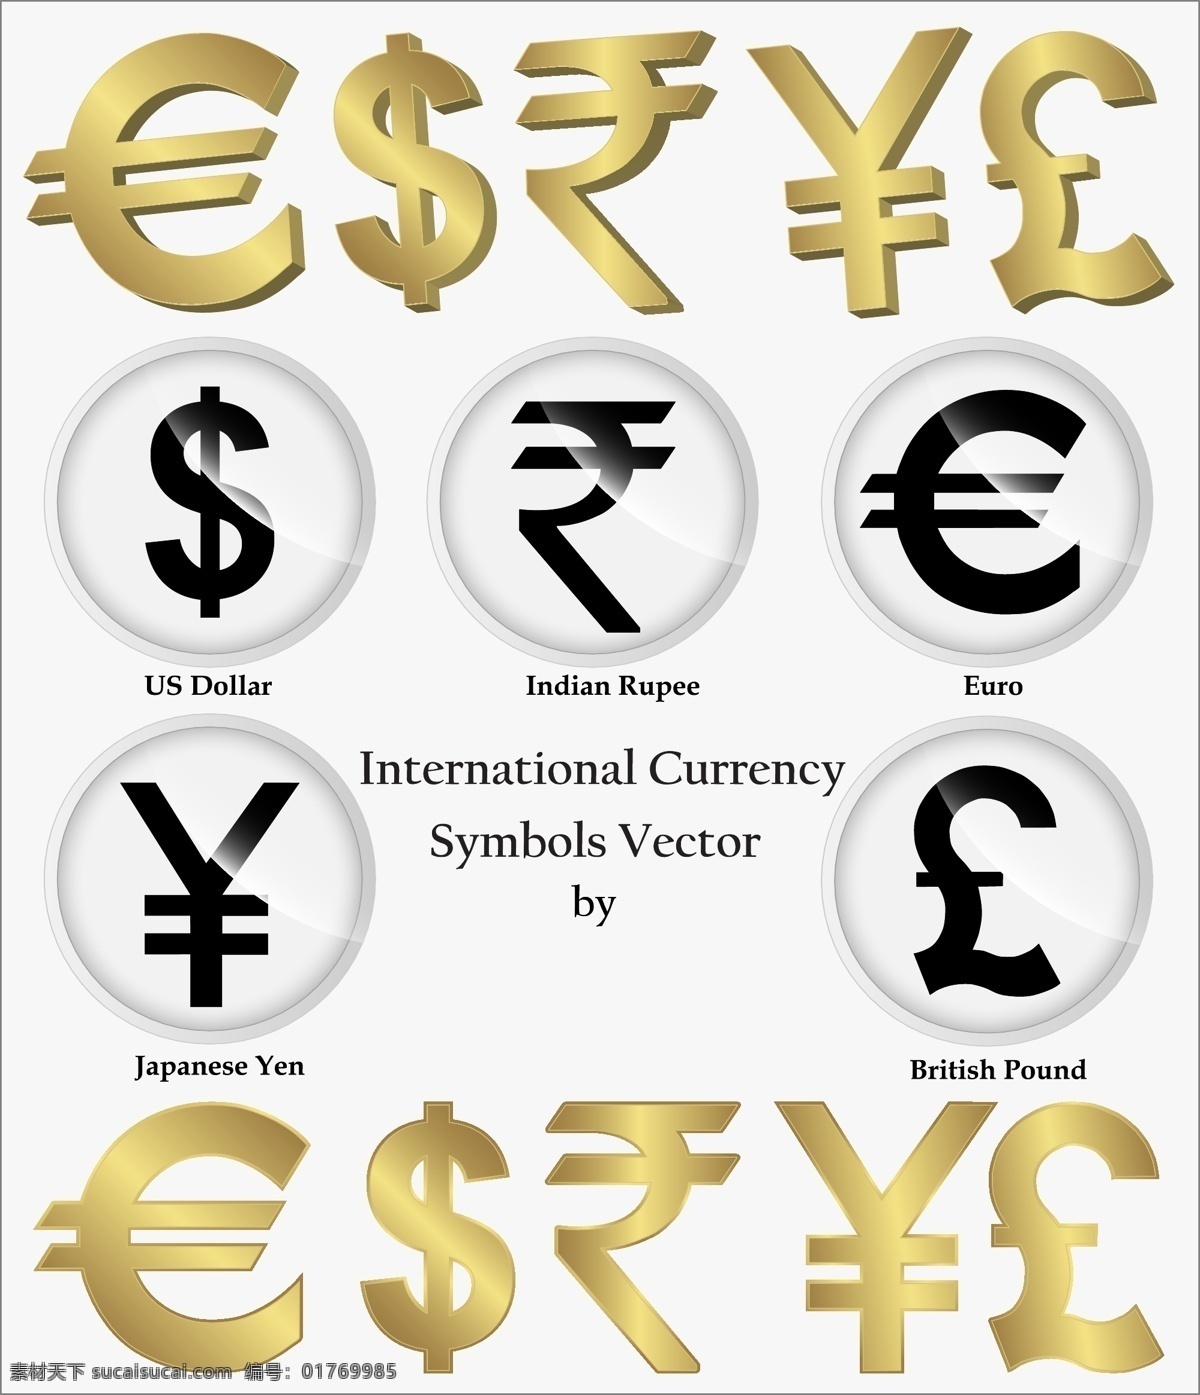 标志 标志素材 金融货币 商务金融 金融标识 欧元代码 美元代码 外币代码 金色标识 黑色标识 矢量 矢量图